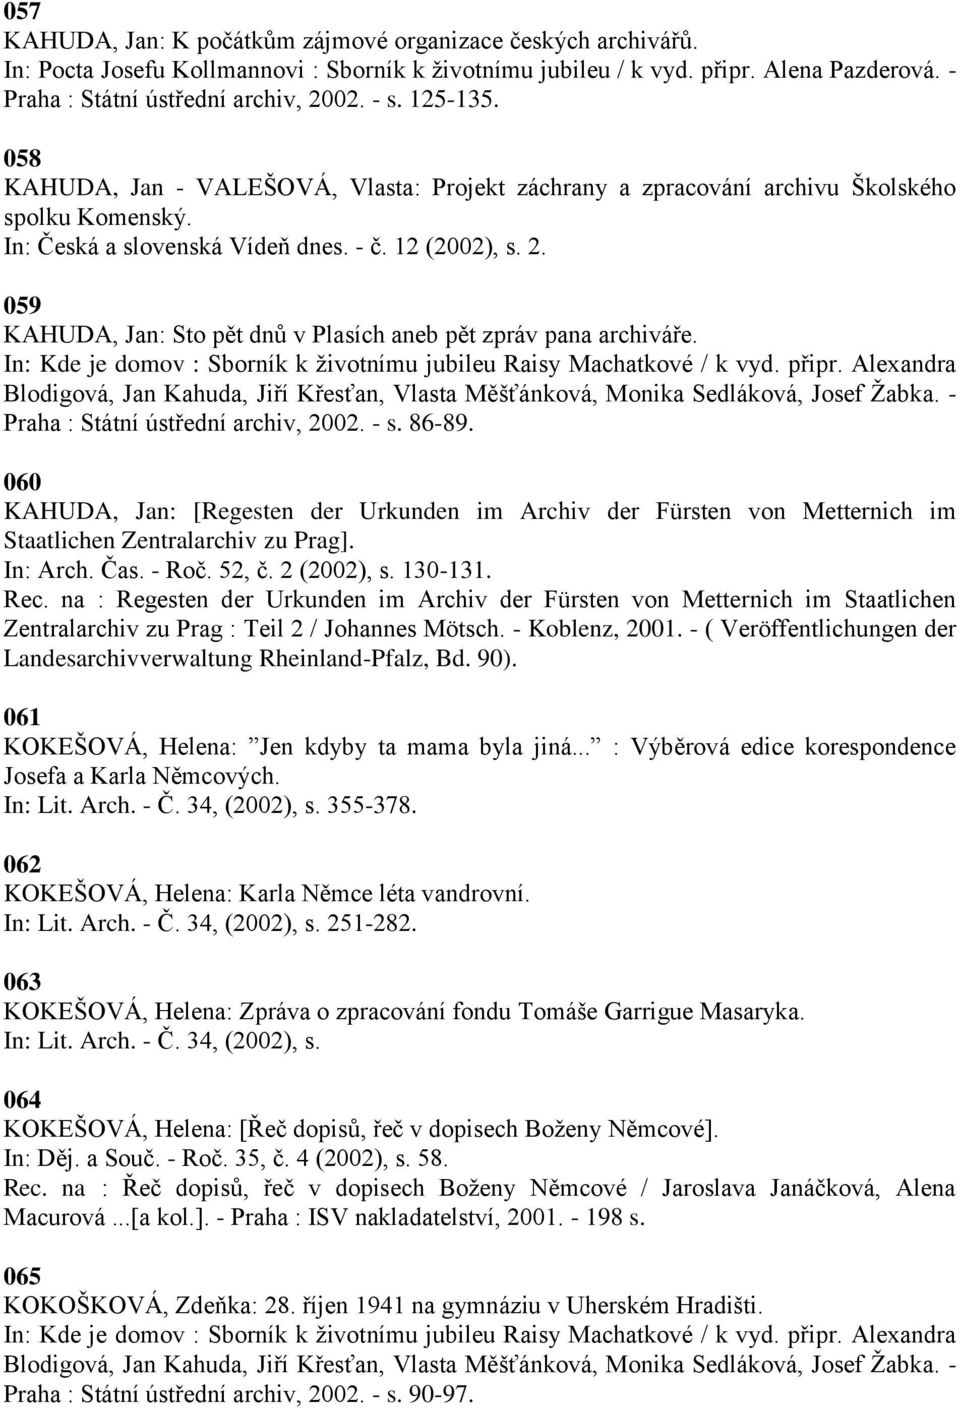 059 KAHUDA, Jan: Sto pět dnŧ v Plasích aneb pět zpráv pana archiváře. Praha : Státní ústřední archiv, 2002. - s. 86-89.